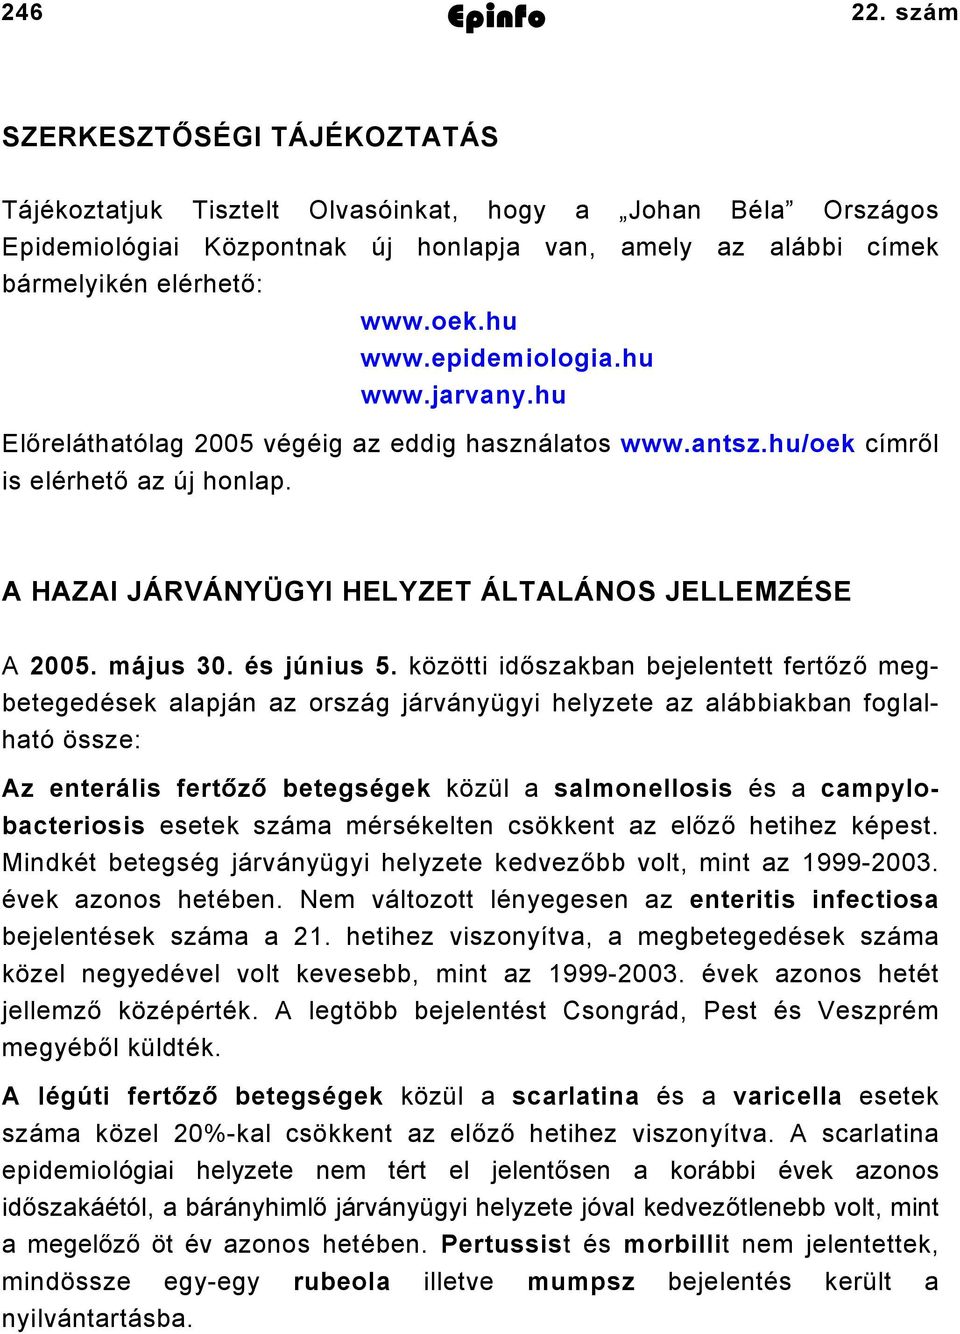 epidemiologia.hu www.jarvany.hu Előreláthatólag 2005 végéig az eddig használatos is elérhető az új honlap. www.antsz.hu/oek címről A HAZAI JÁRVÁNYÜGYI HELYZET ÁLTALÁNOS JELLEMZÉSE A 2005. május 30.